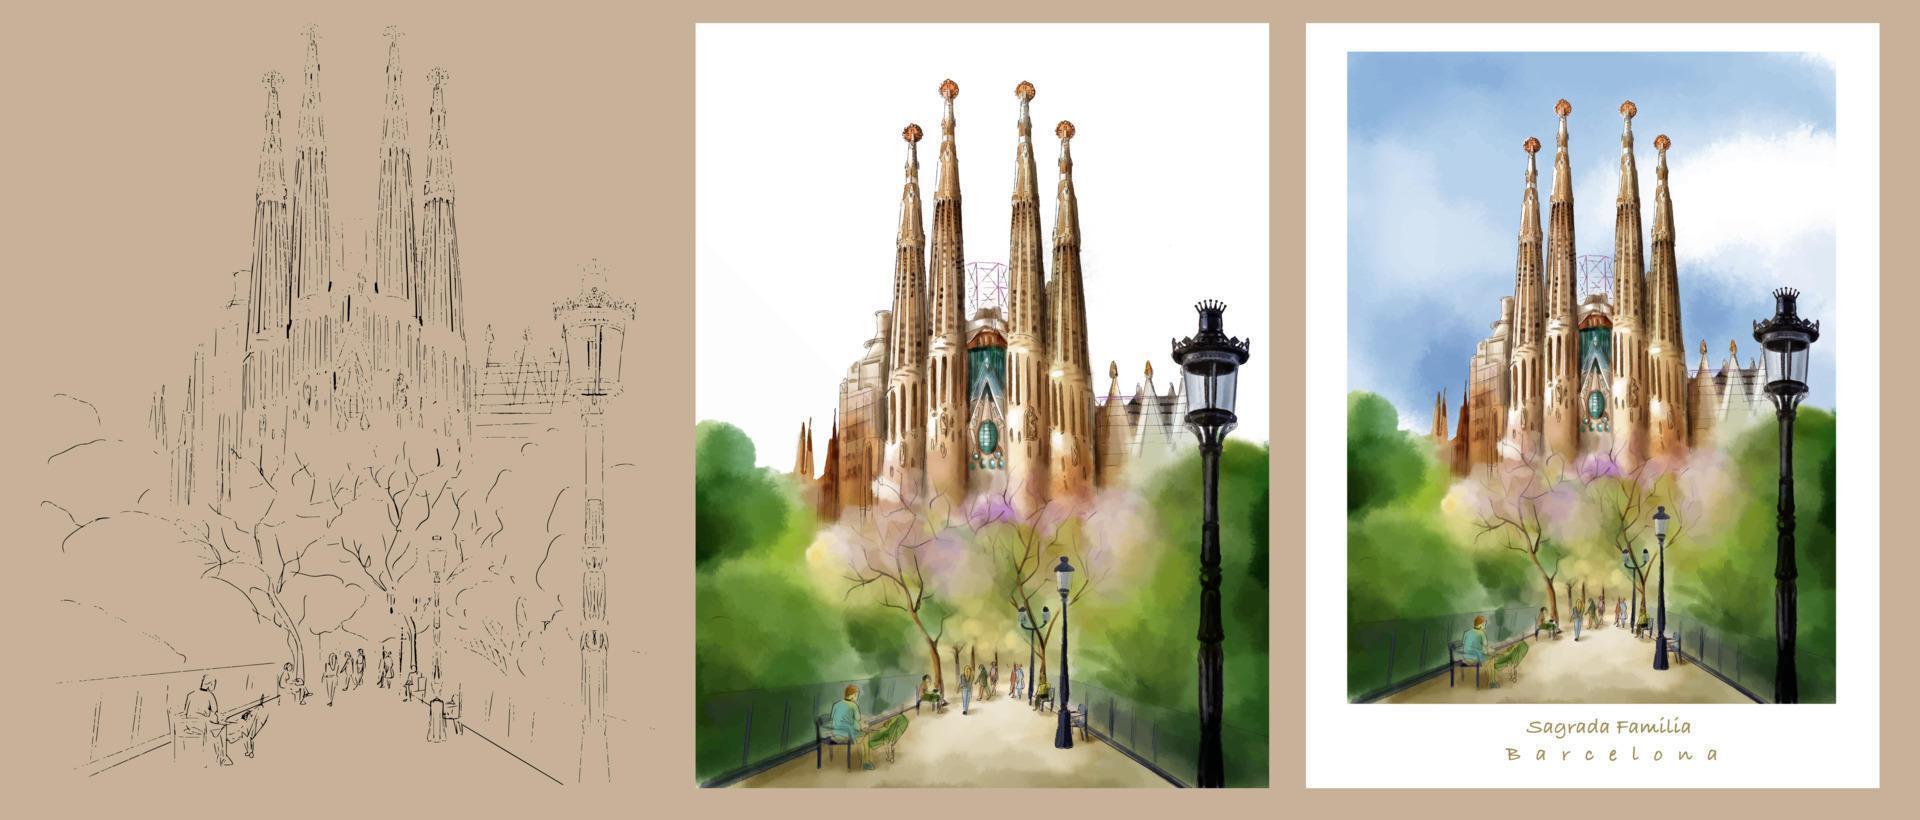 barcelona arquitectura catedrales acuarela dibujo vectorial. para ilustraciones. catedral de gaudi, arquitectura en barcelona, ilustración antigua grabada, dibujada a mano, boceto vector